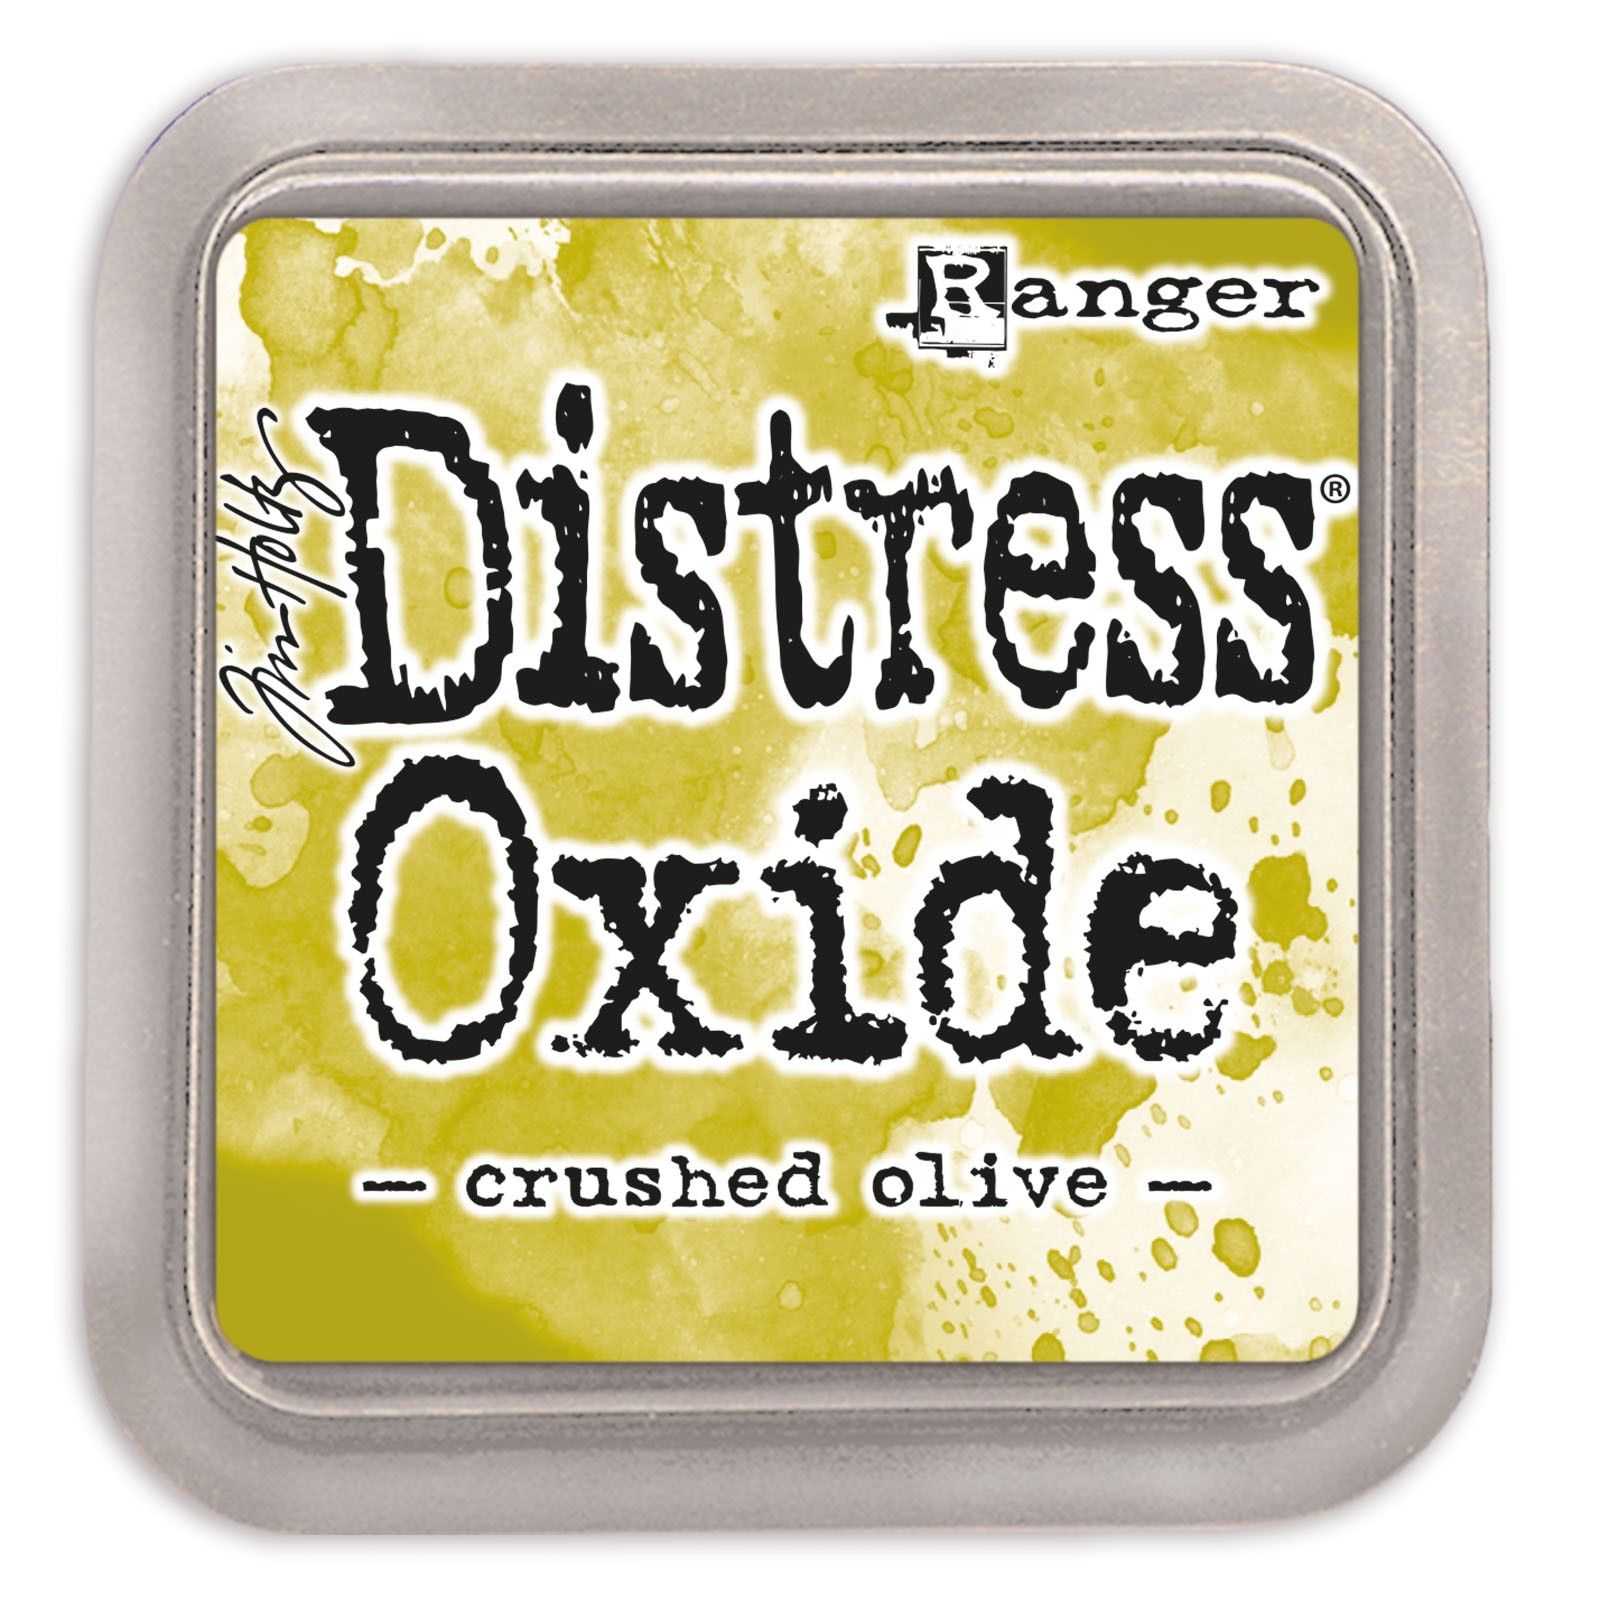 Tim Holtz Distress Oxide Ink Pad - Crushed Olive